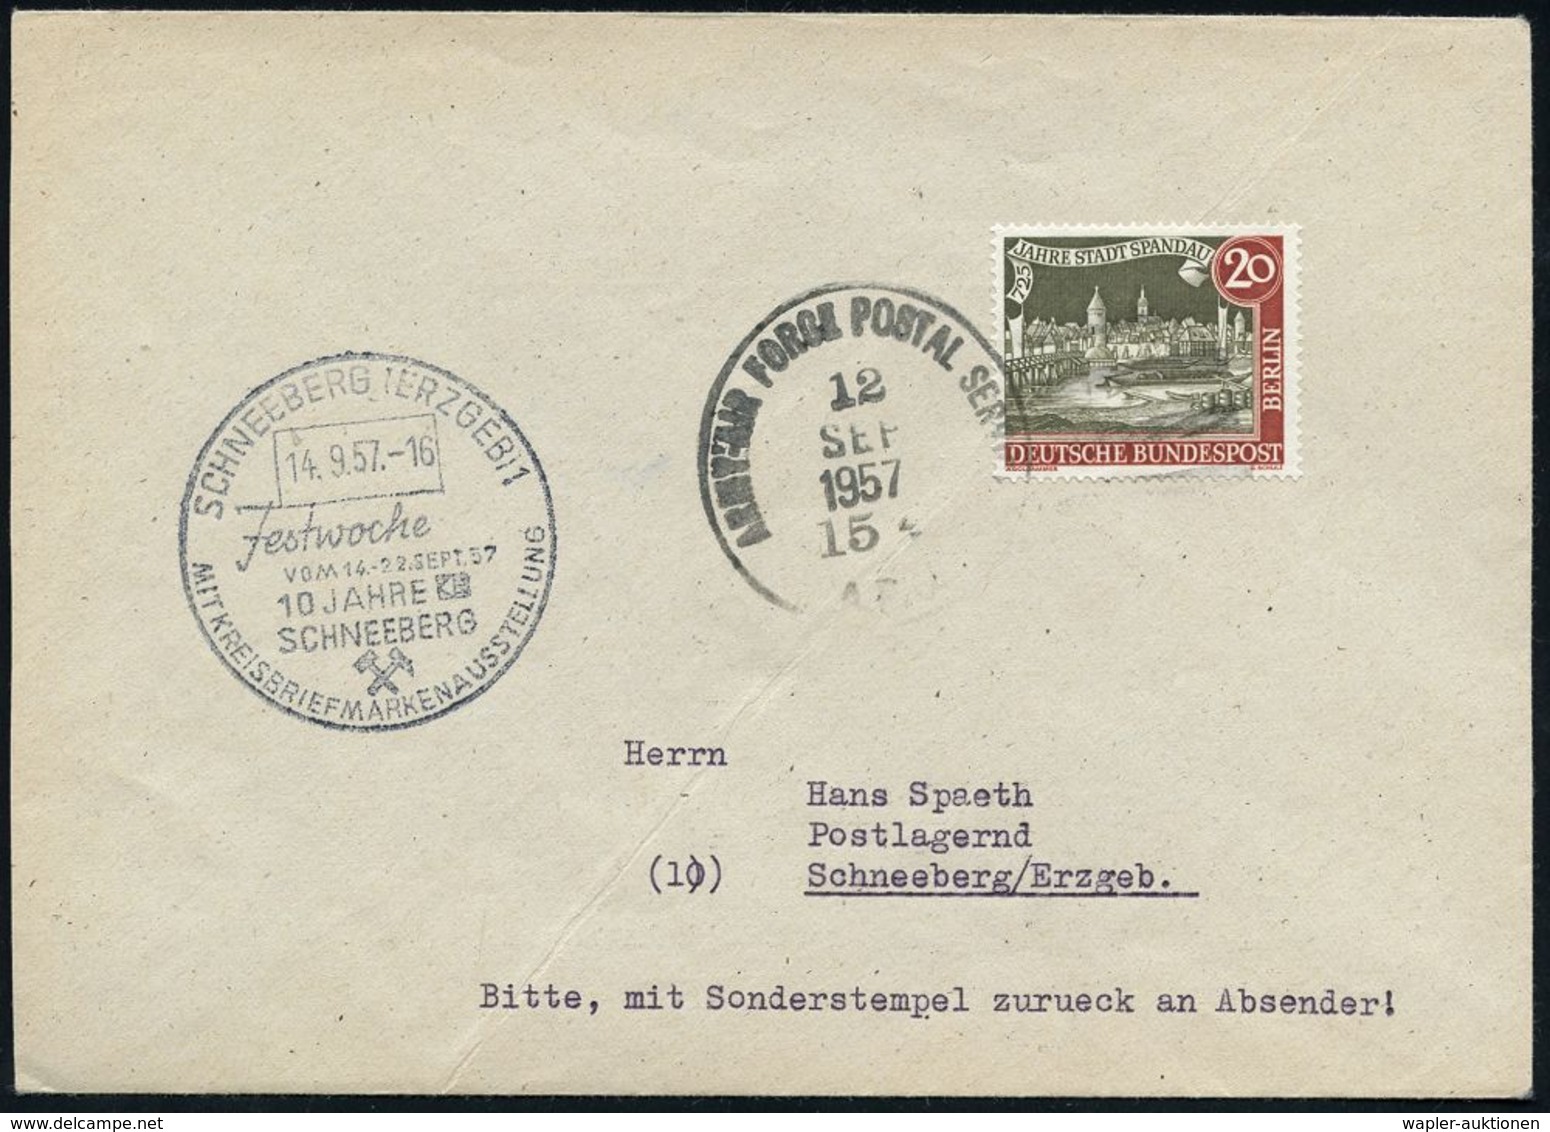 DIE ALLIIERTEN SIEGERMÄCHTE DES II.WELTKRIEGES: U.S.A. / U.D.S.S.R. / GROSSBRITANNIEN / FRANKREICH Etc. : Stuttgart 1957 - 2. Weltkrieg